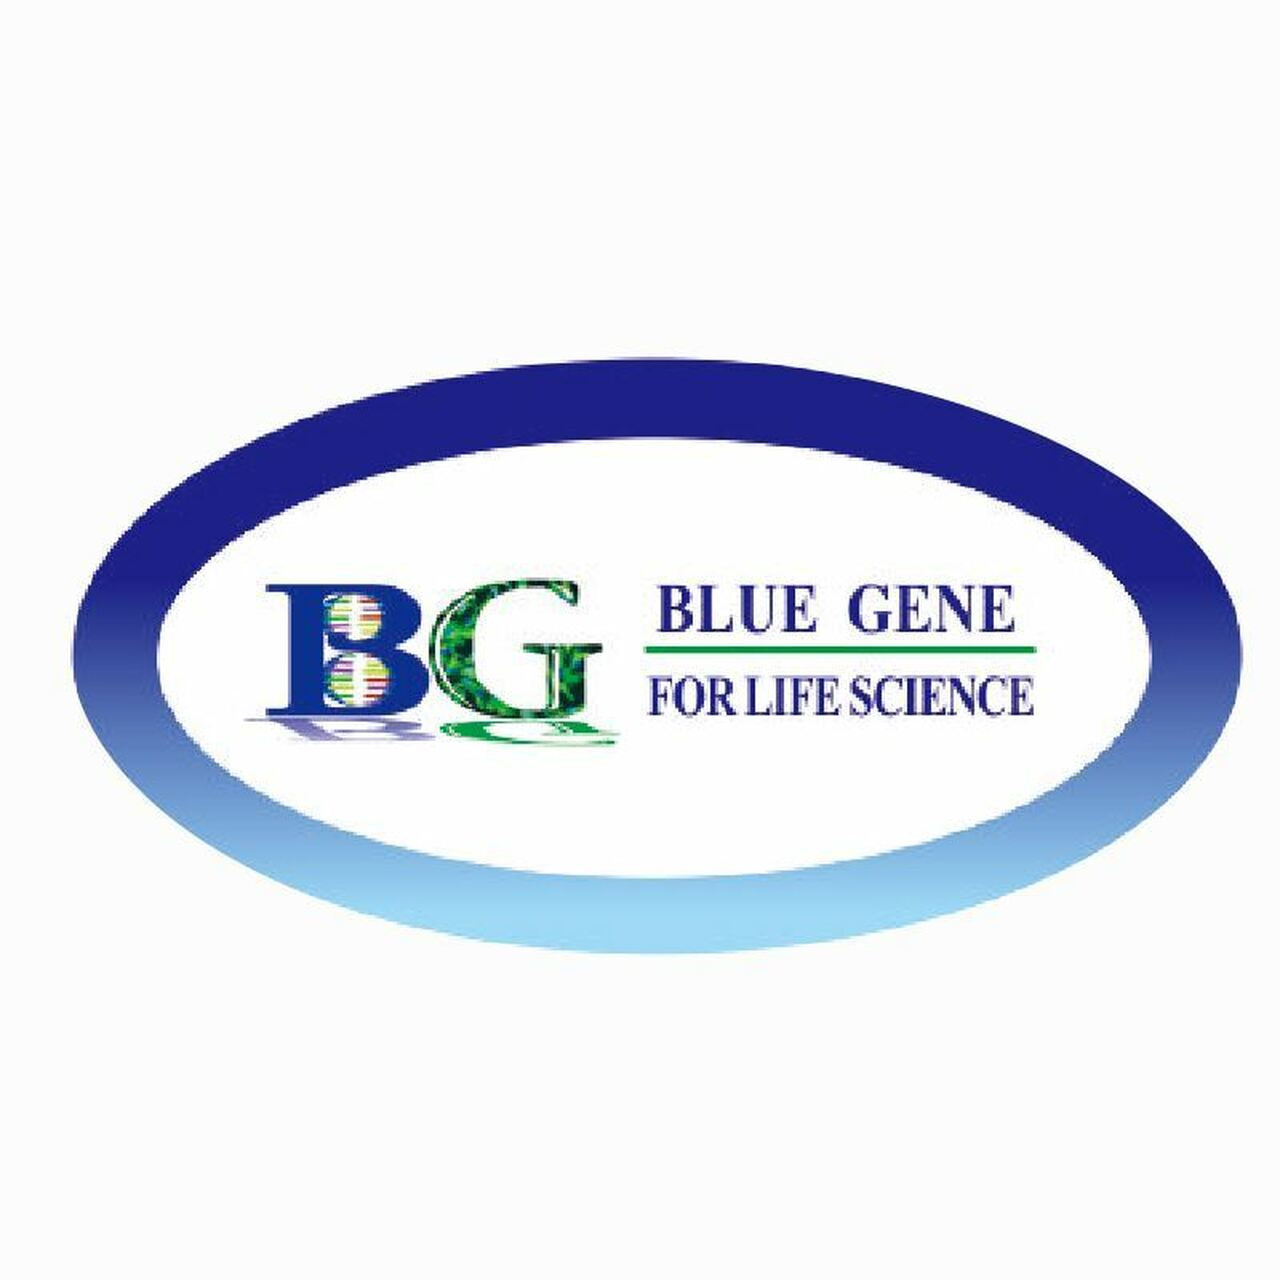 bluegene-urinary-bladder-cancer-antigen-elisa-kit